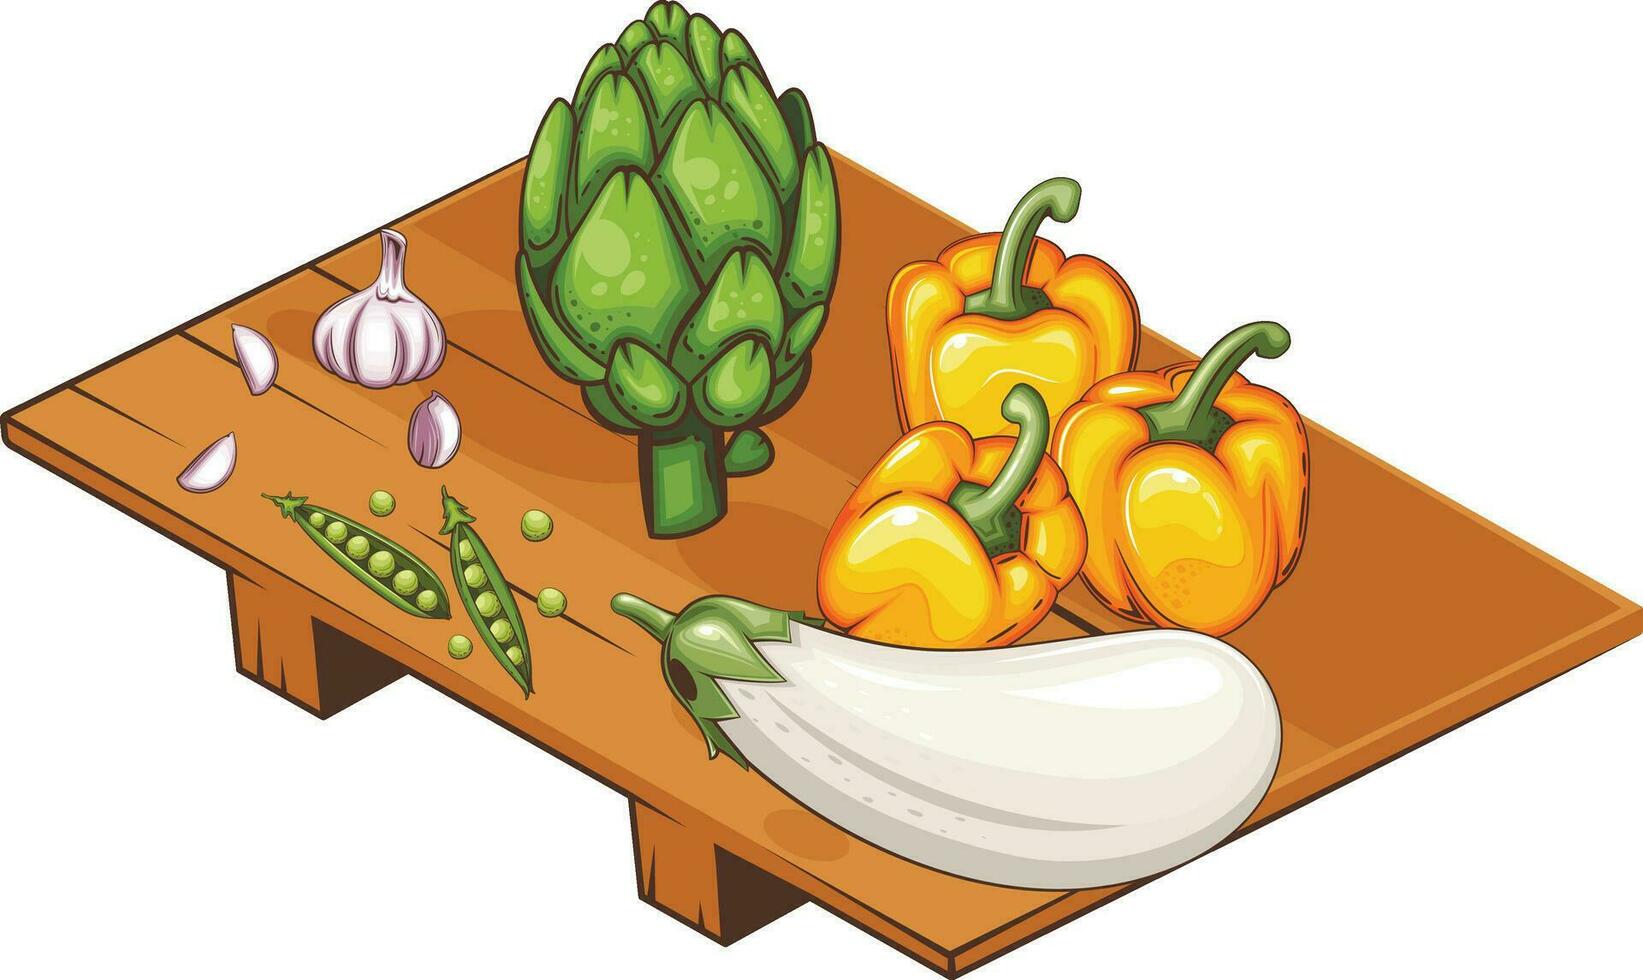 frisch Gemüse Illustration, Gemüse von Artischocke, Knoblauch, Aubergine, Grün Erbse und Glocke Pfeffer vektor